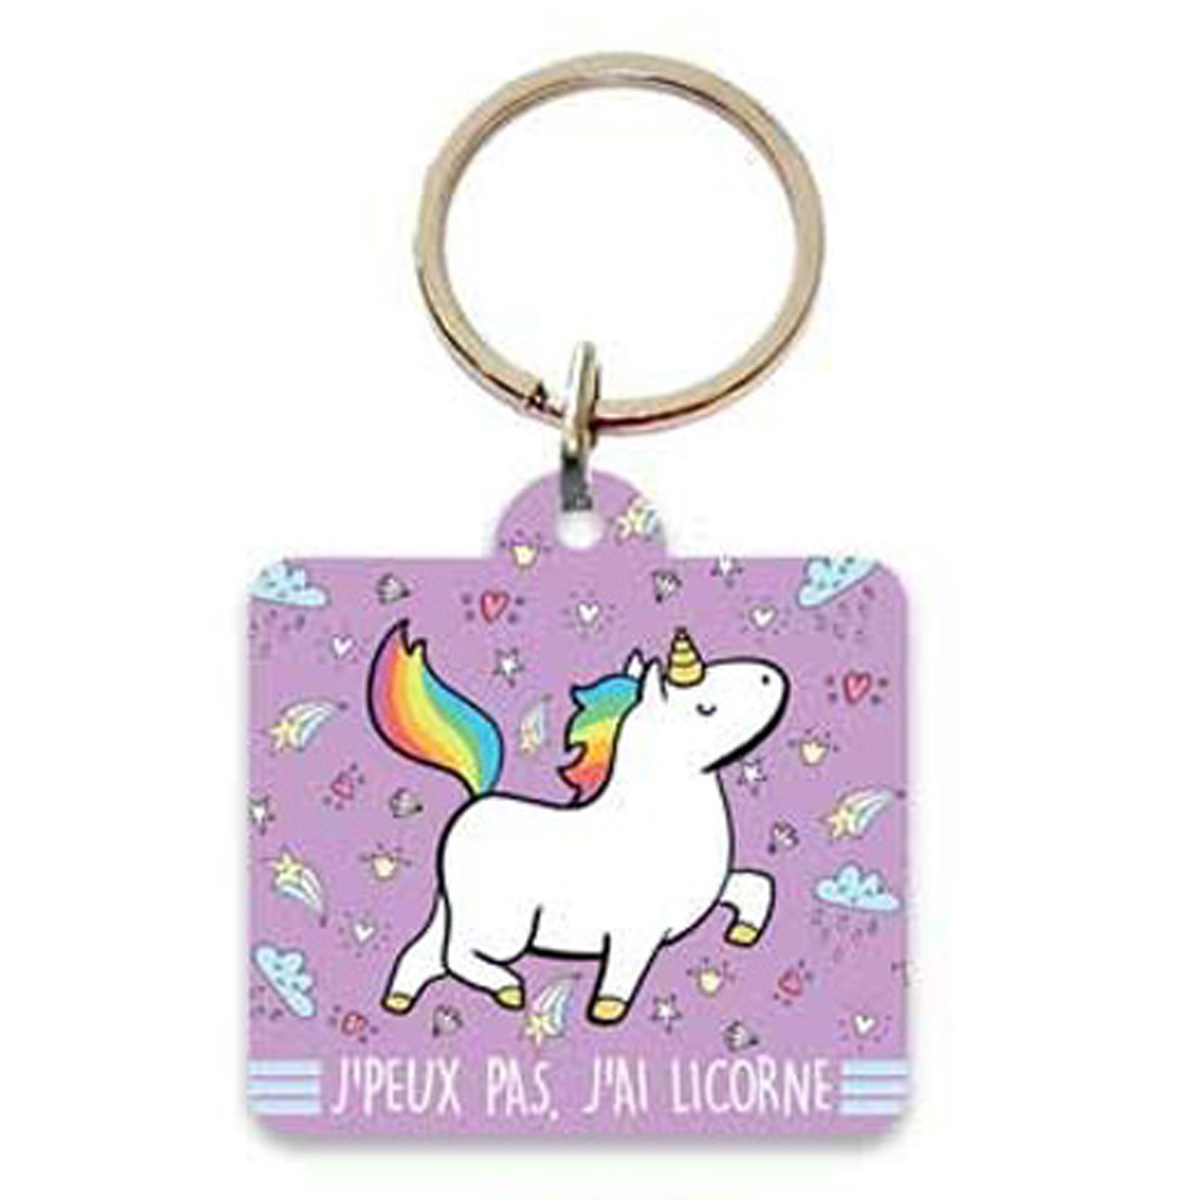 Porte-clés \'Licorne My Unicorn\' violet (j\'peux pas, j\'ai Licorne) - 55x55 cm - [Q4510]